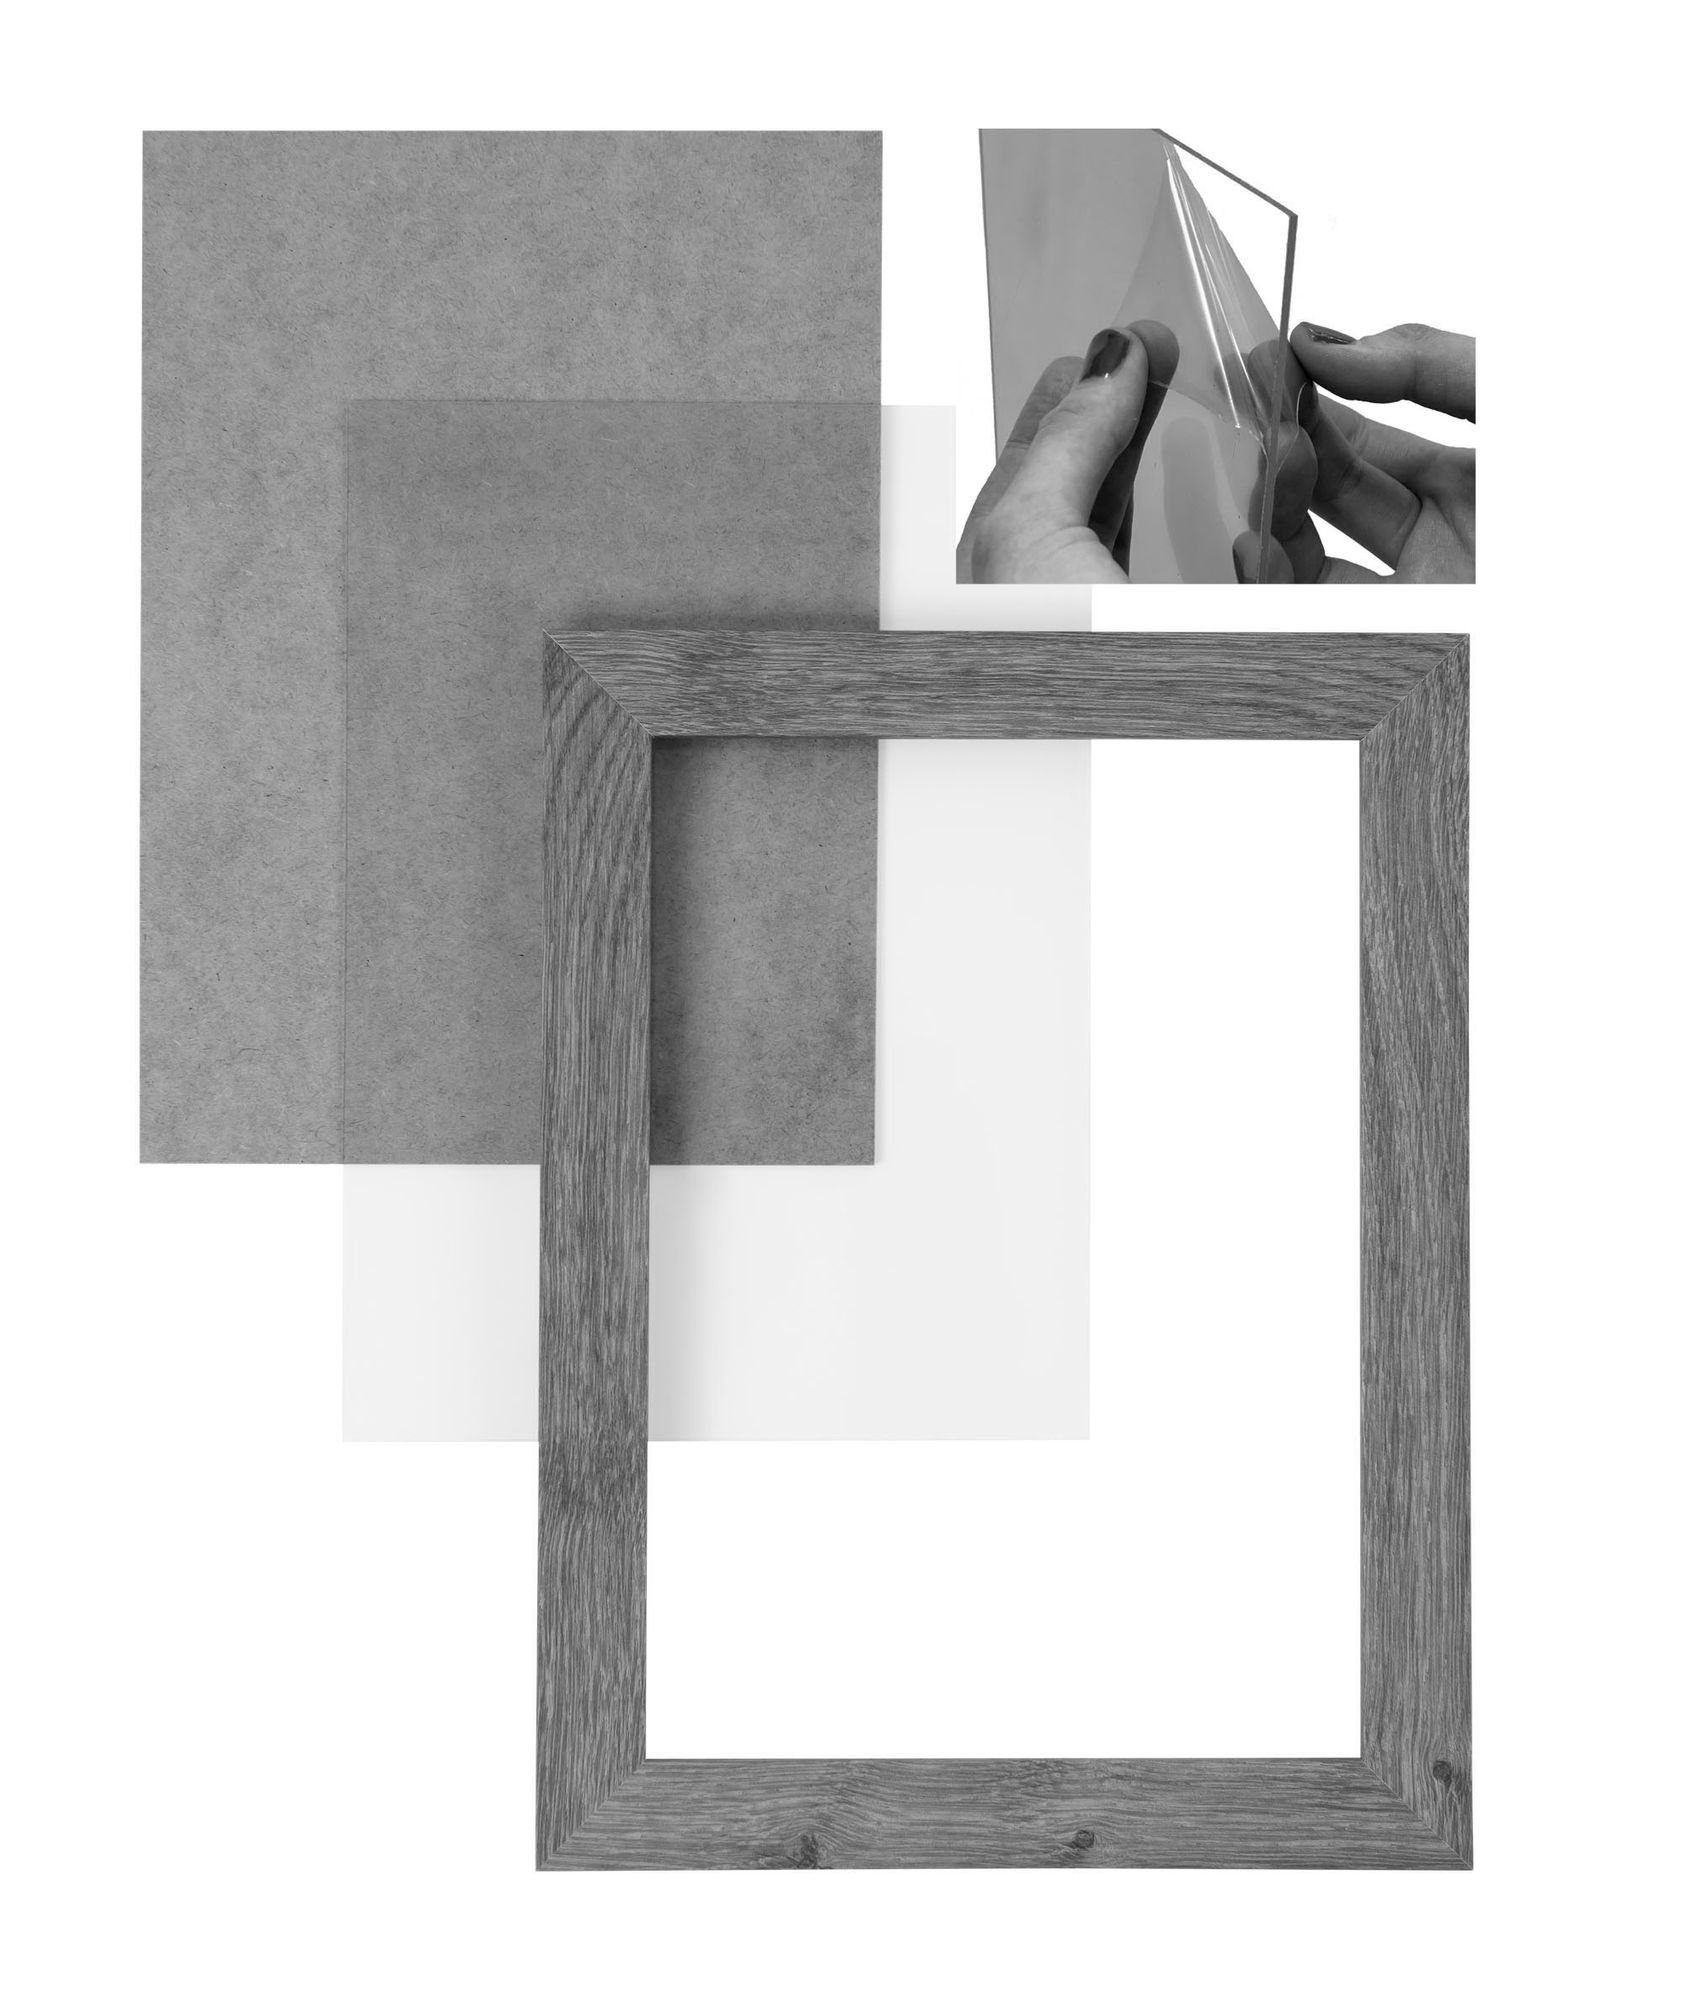 und inkl. Clamaro Bilderrahmen eckiger in Rückwand Holz 'Collage' Bilderrahmen 17x22 MDF handgefertigt nach stahlgrau Rahmen FSC® CLAMARO Moderner Aufhänger Maß Acrylglas,